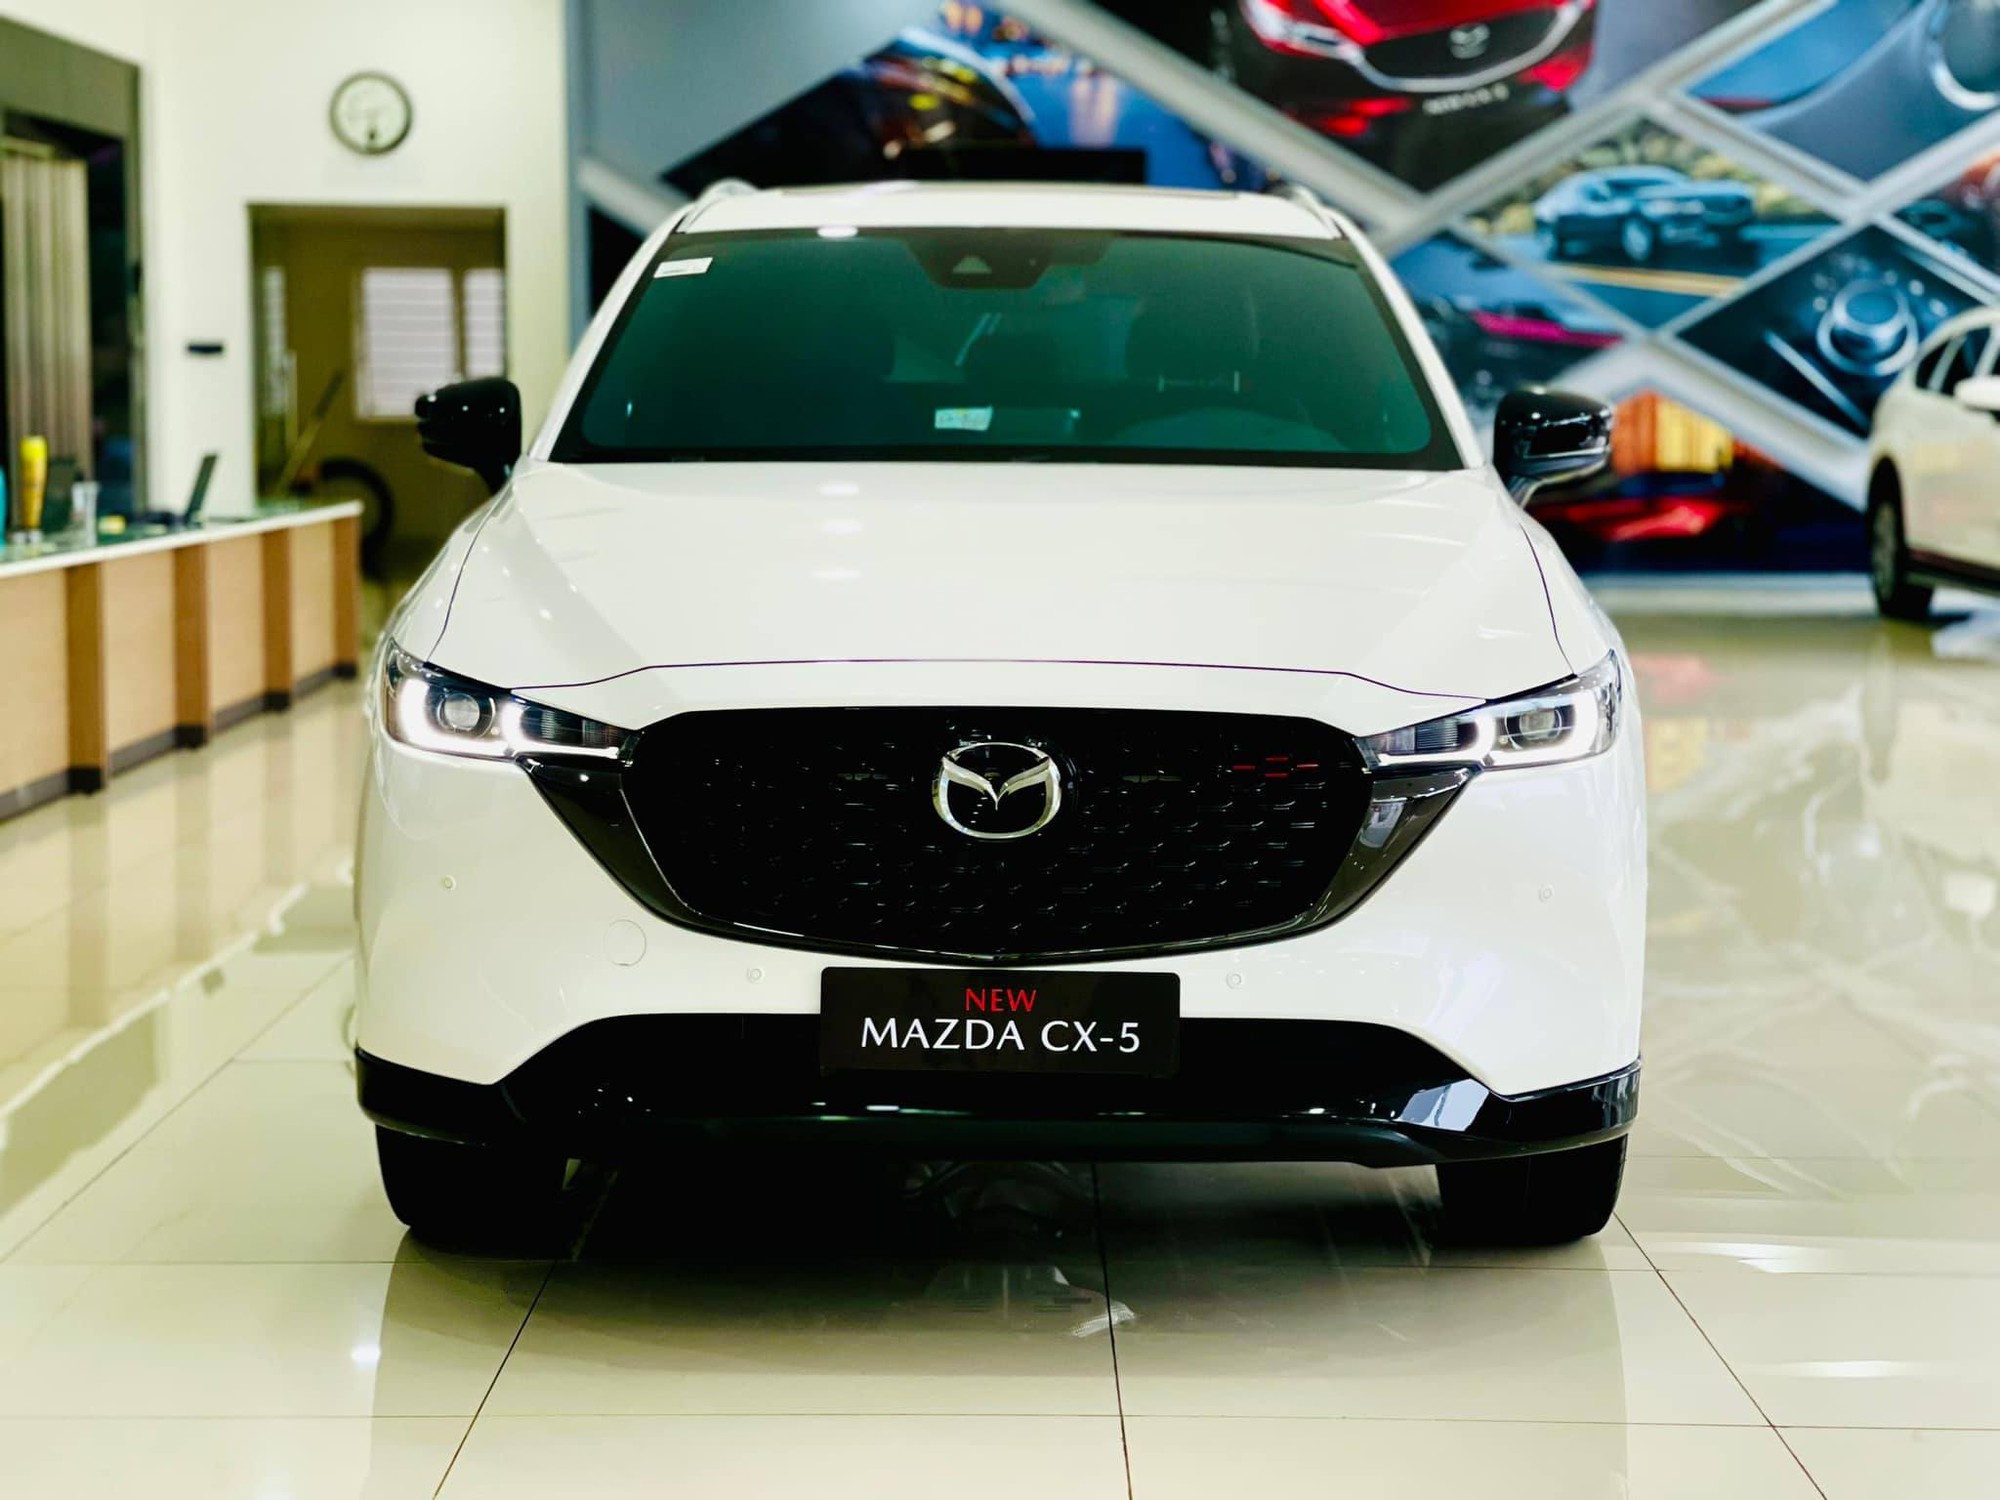 Hé lộ hình ảnh Mazda 2 thế hệ mới, thay đổi về thiết kế, nâng cấp trang bị